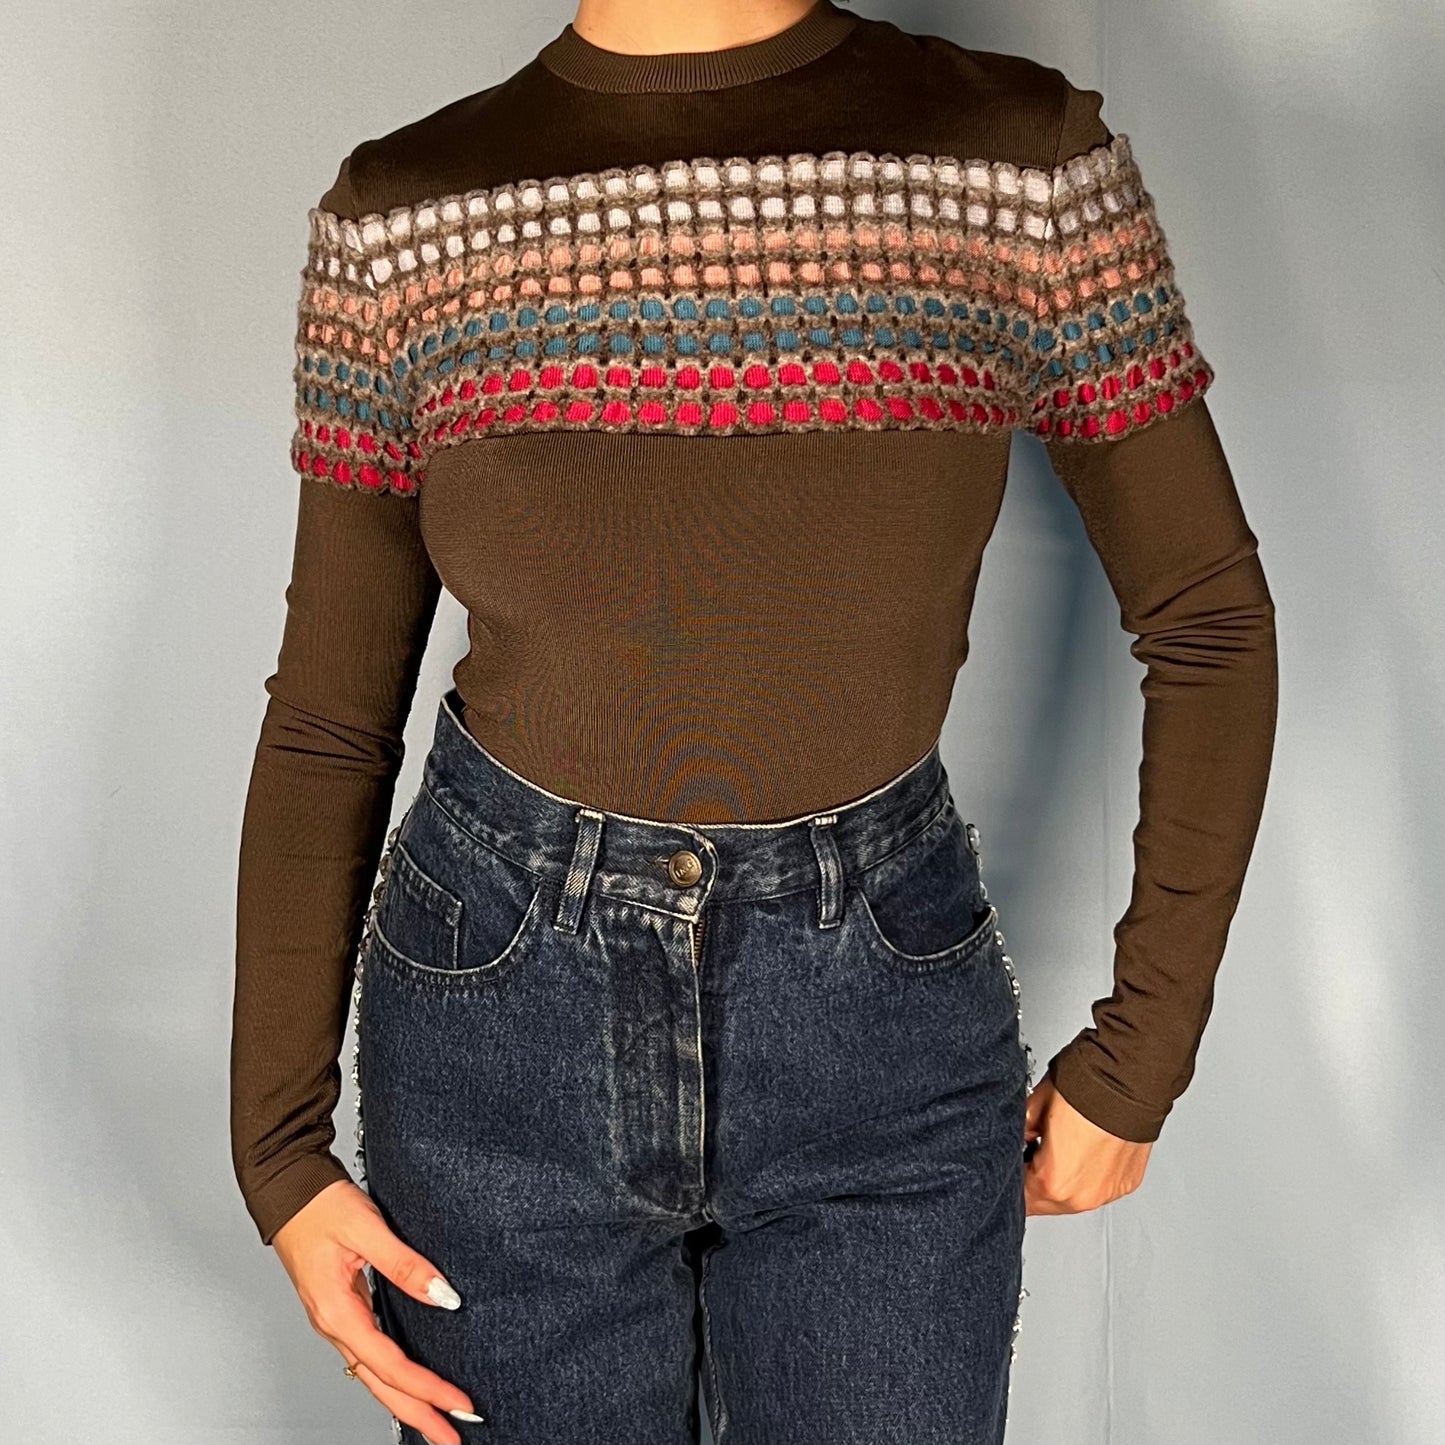 Azzedine Alaia Rainbow Knit Bodysuit Top